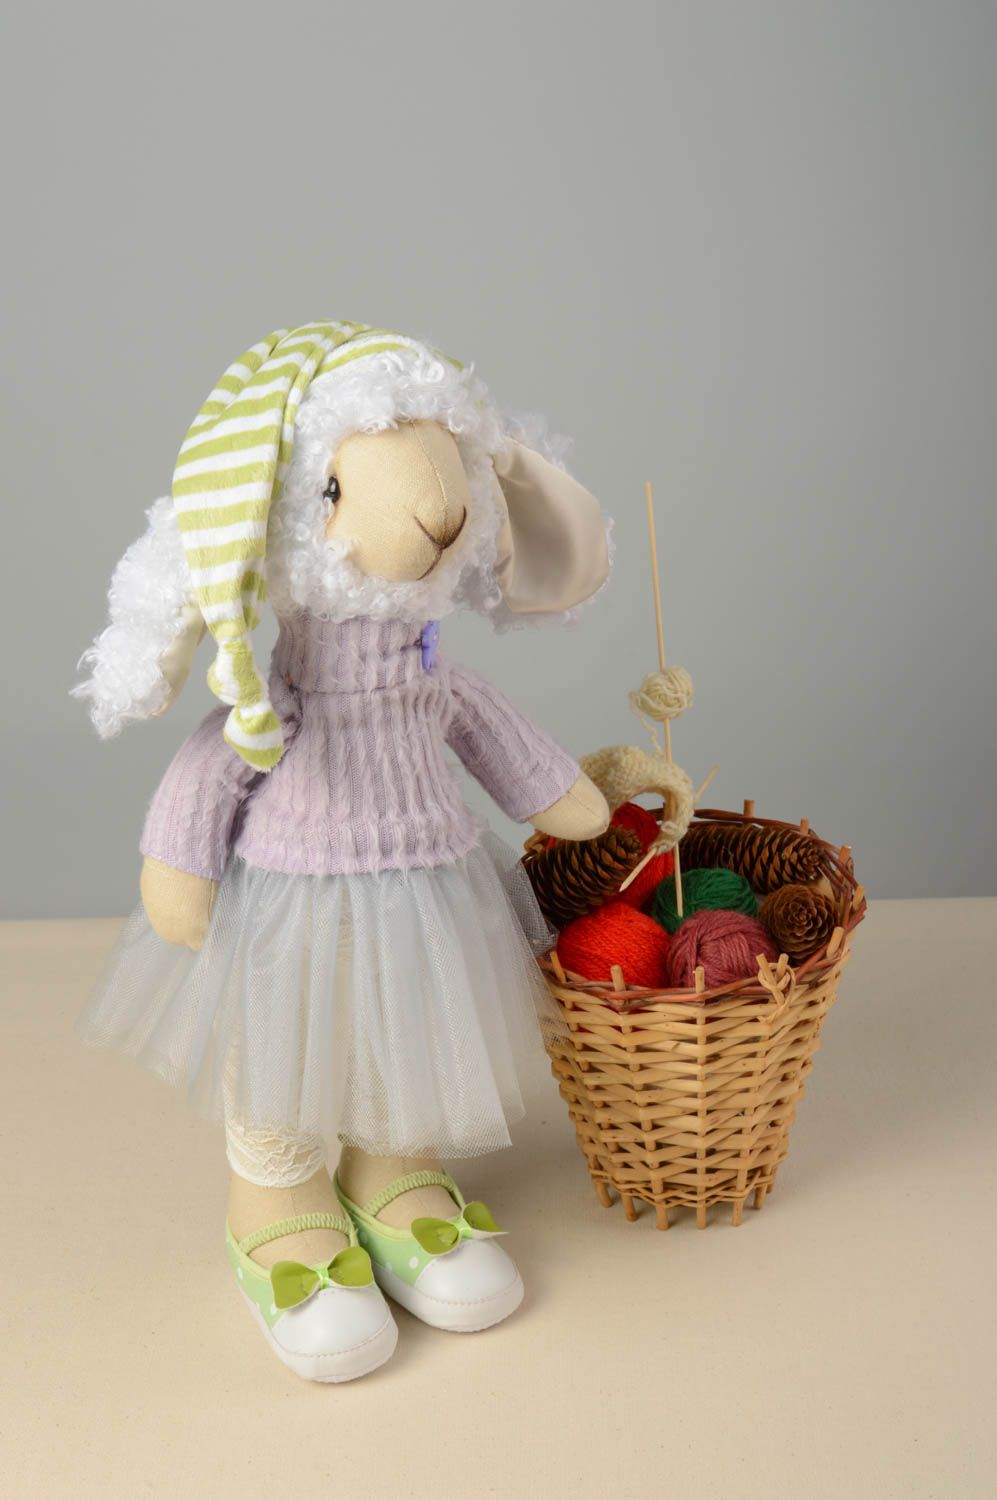 Textil Kuscheltier Schaf im Kleid niedlich Spielzeug für Kinder und Deko foto 1